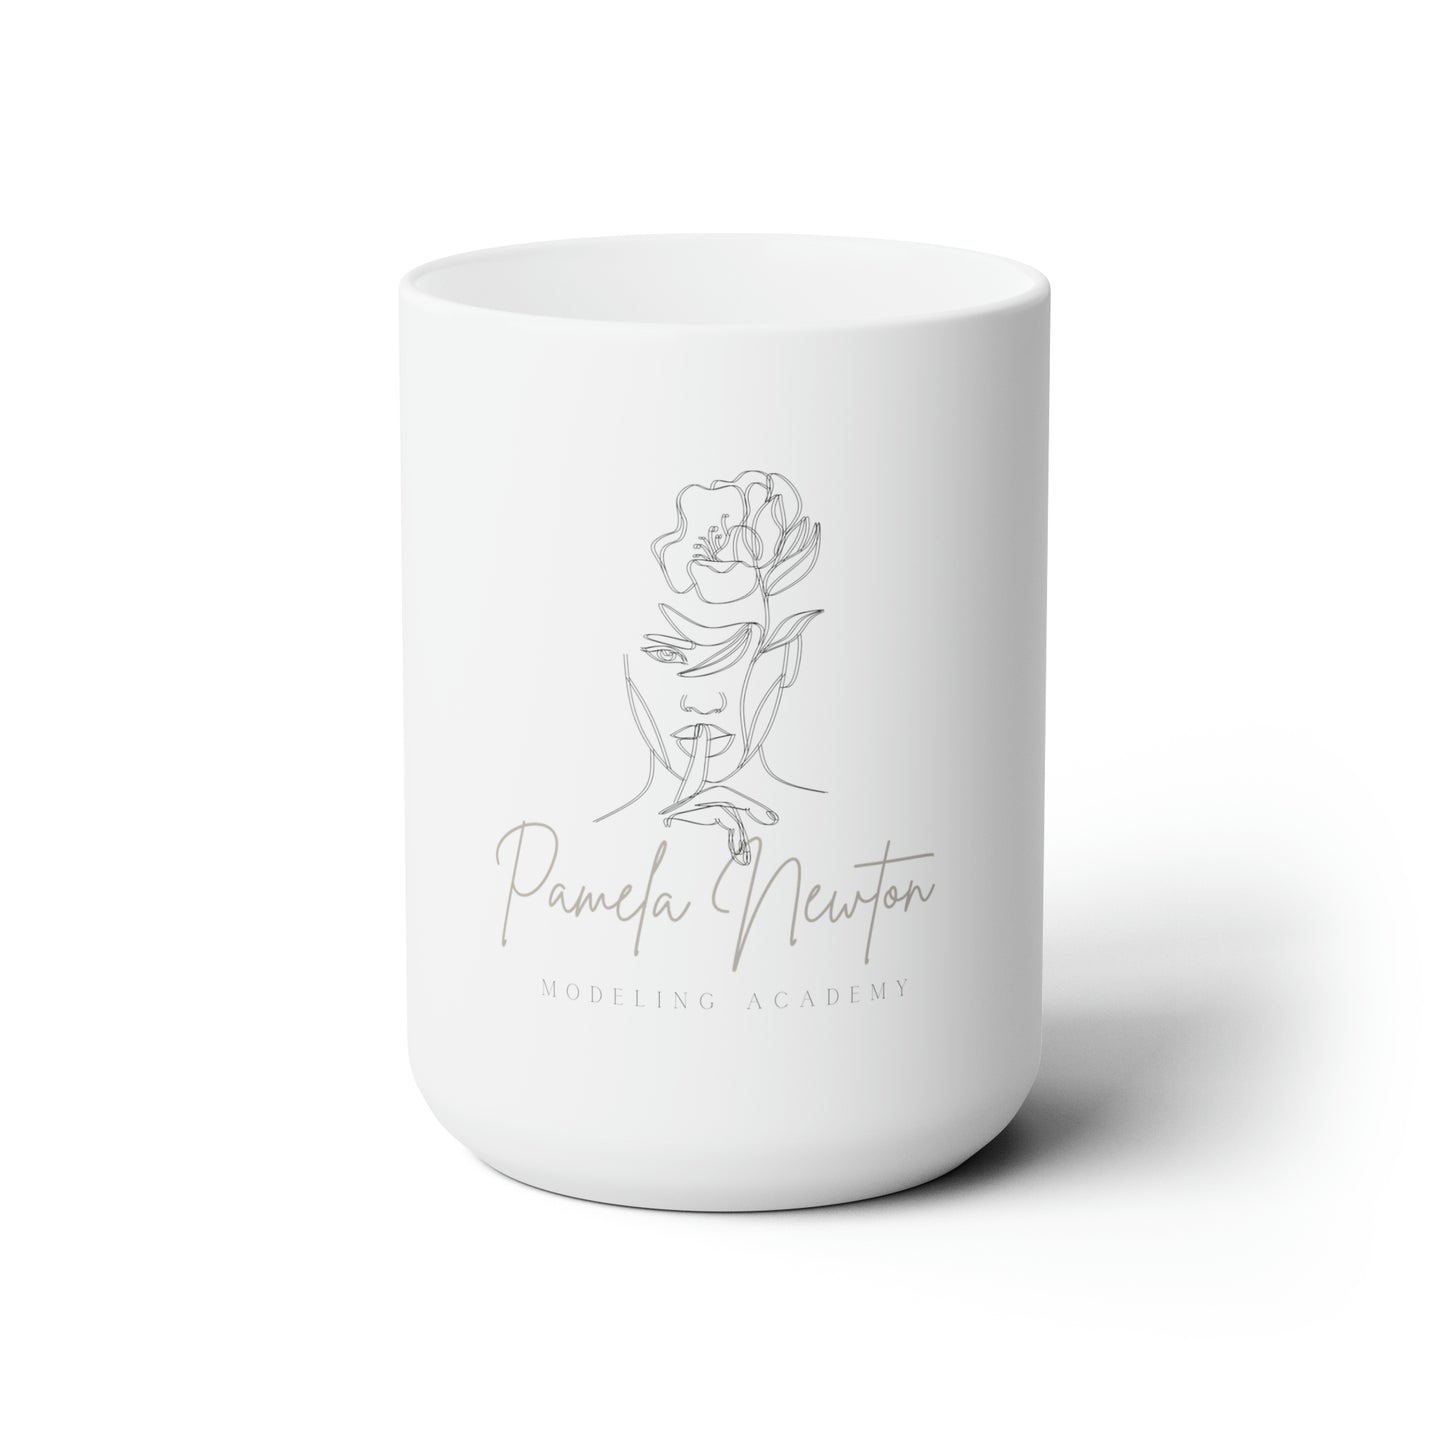 Pamela Newton Modeling Academy  Ceramic Mug 15oz